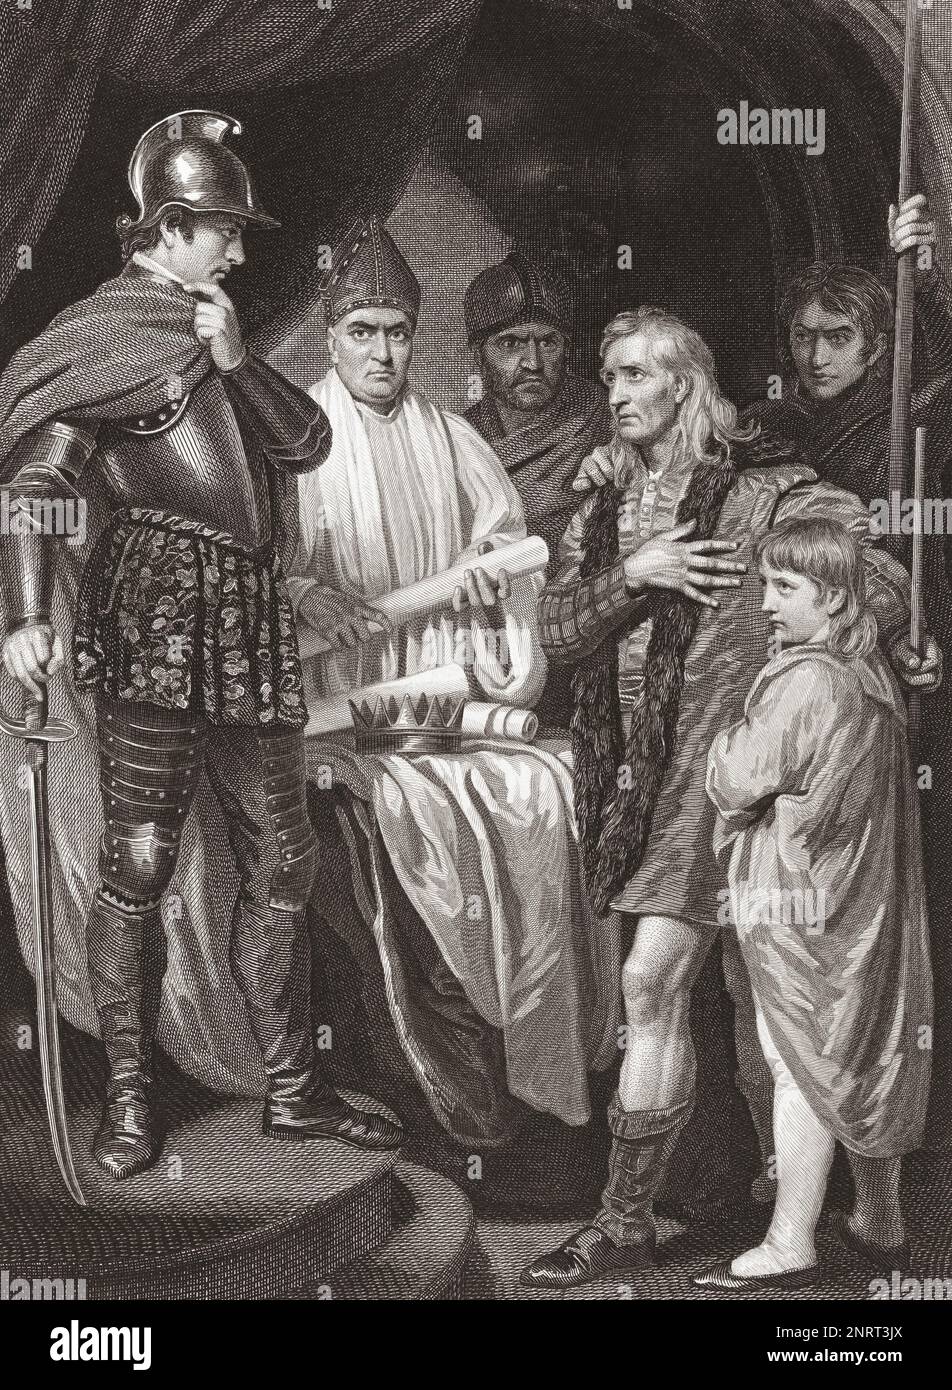 John Balliol, roi des Écossais, remet sa couronne à Edward Ier d'Angleterre. 10 juillet 1296. Après une impression de James Parker tirée de la peinture de John Opie présentée à l'origine dans la galerie historique de Robert Bowyer, publiée entre 1793 et 1806. Banque D'Images